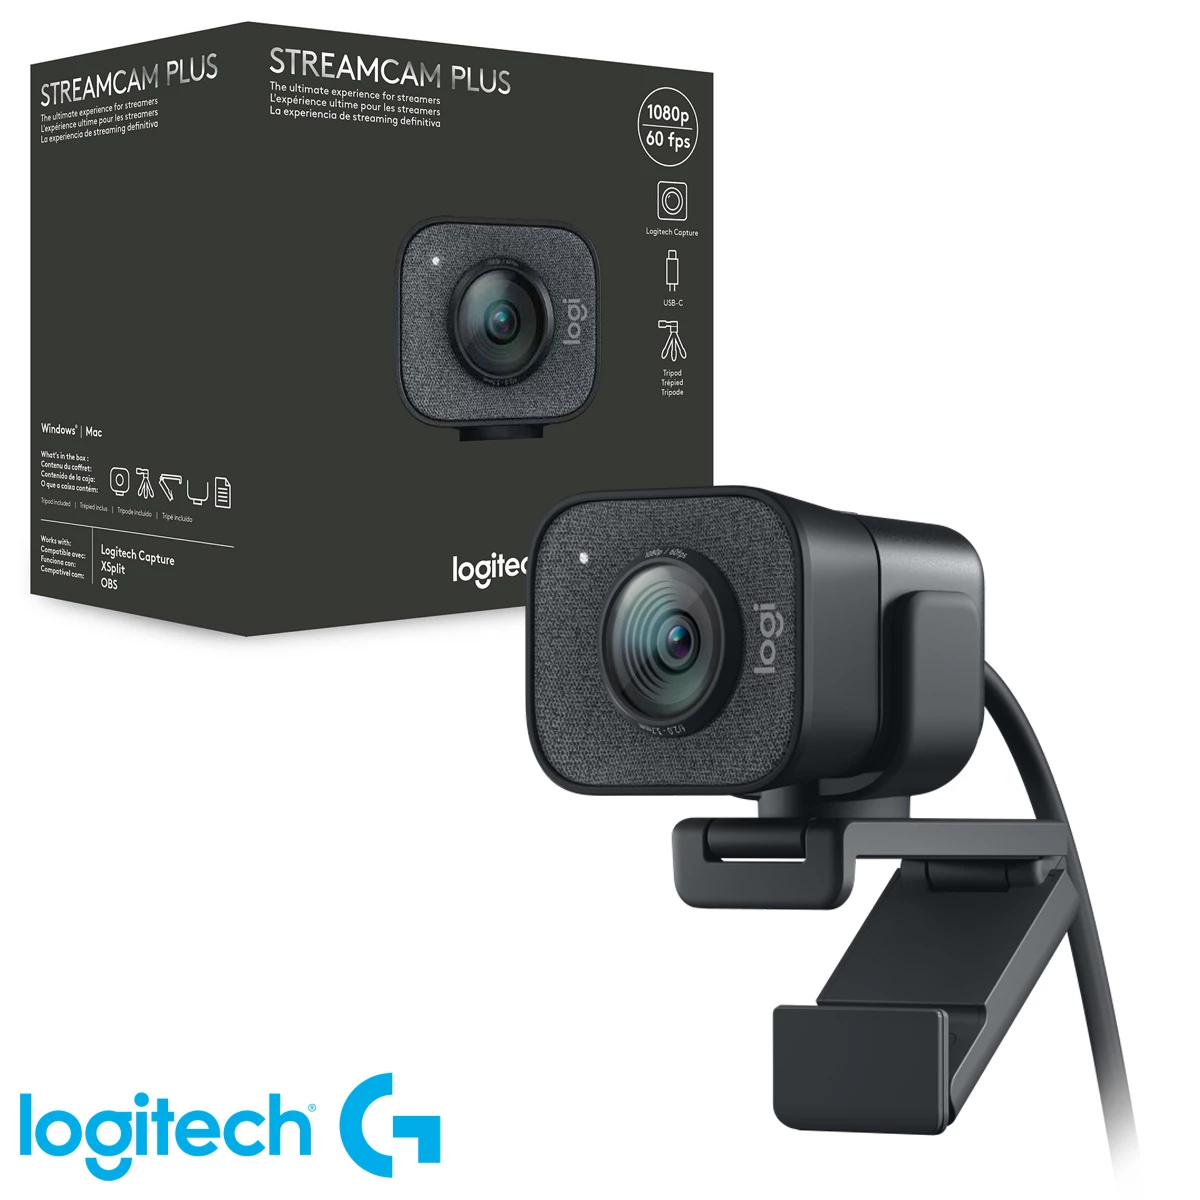 Cámara Webcam Logitech Streamcam Plus 1080p / 60fps USB-C + trípode